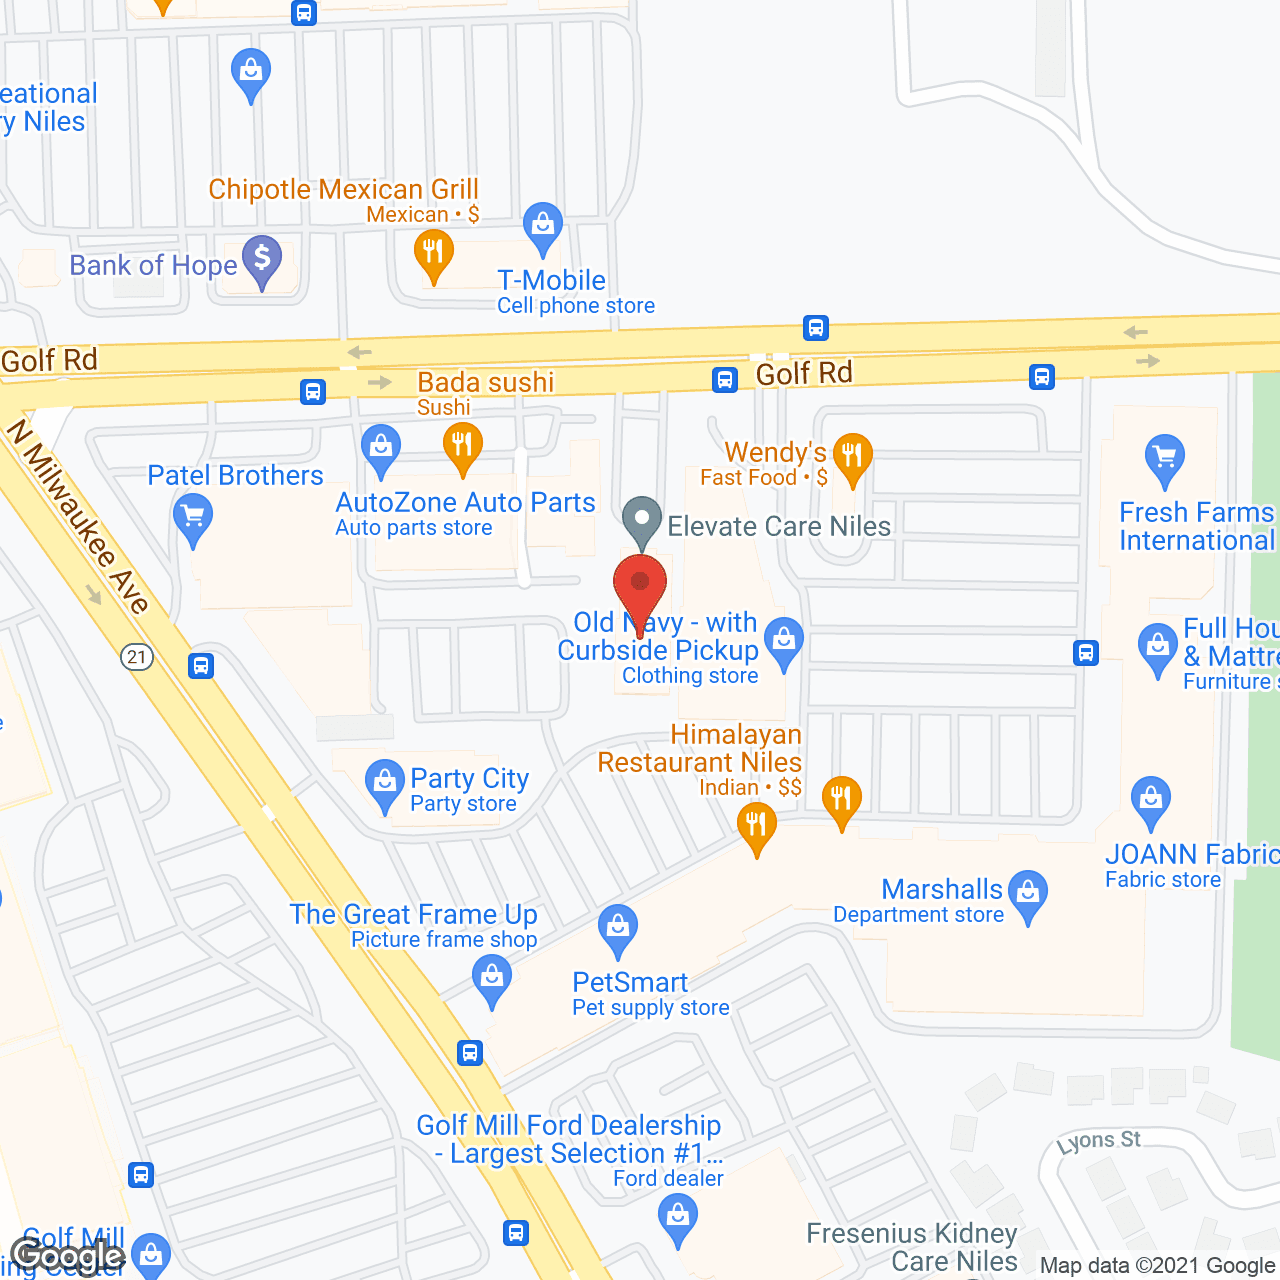 Glenbridge Nursing & Rehabilitation Center in google map